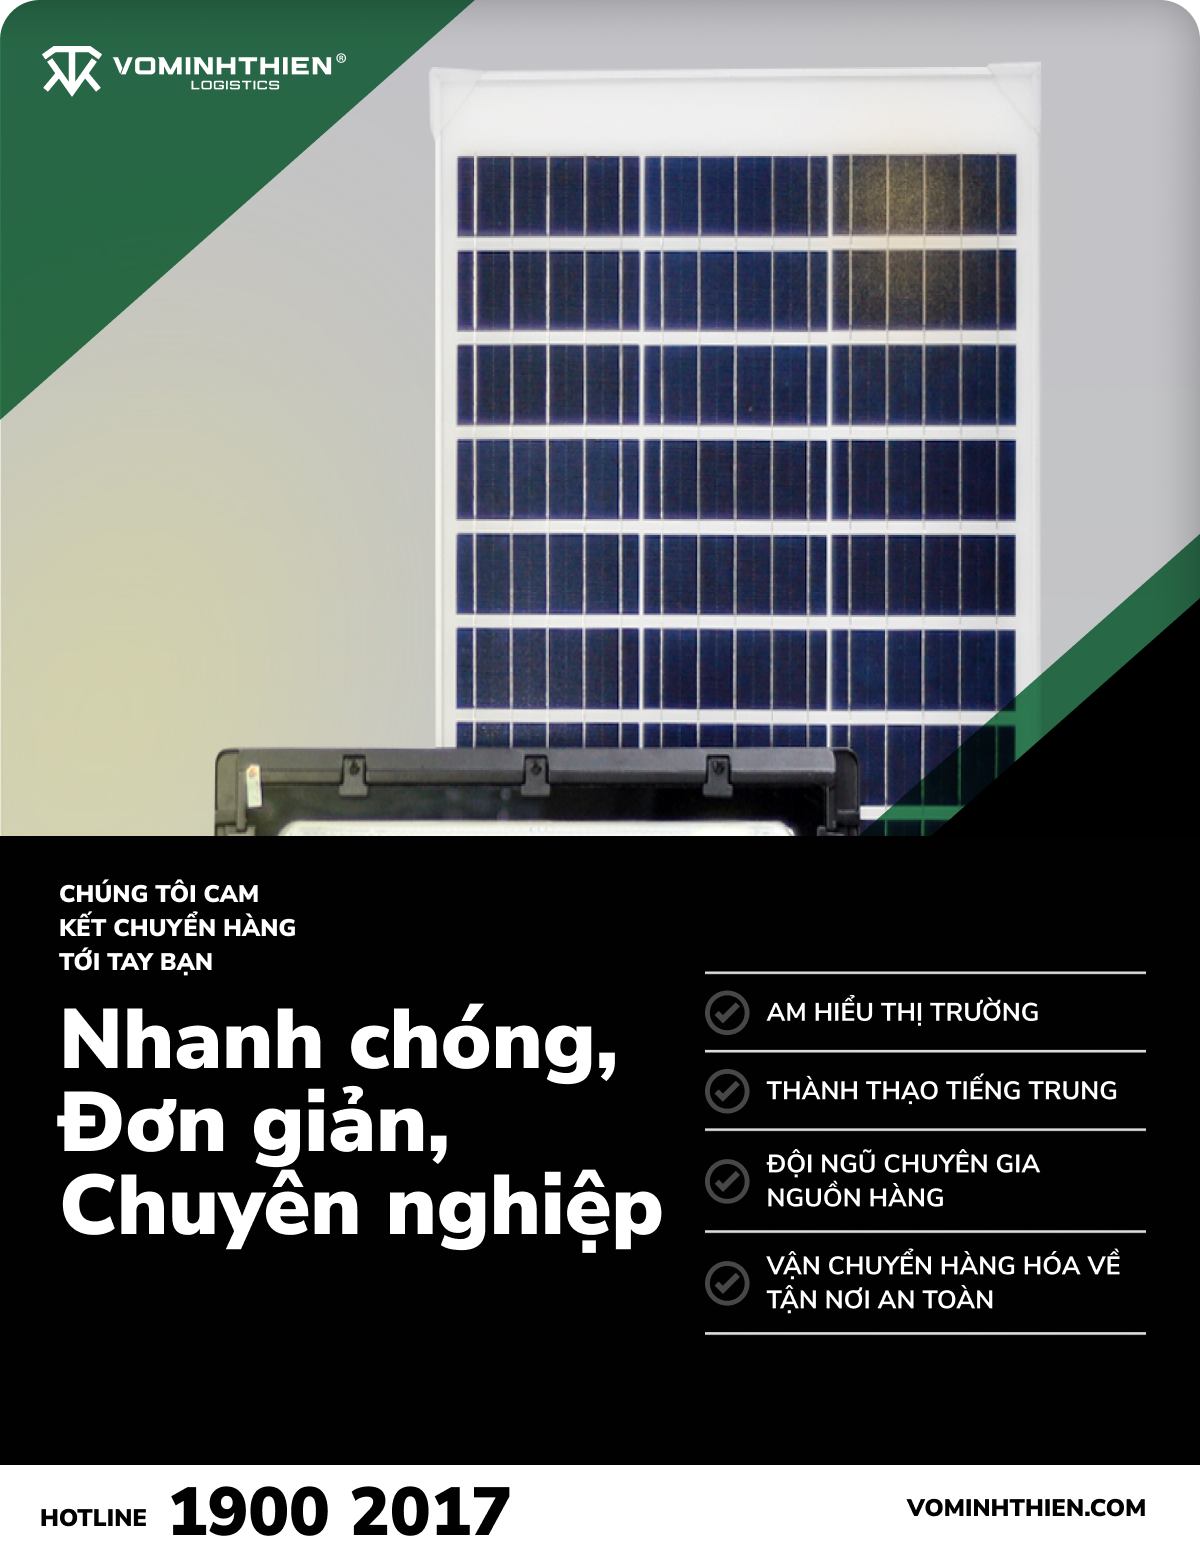 Nhập hàng đèn chiếu sáng năng lượng mặt trời tại Võ Minh Thiên